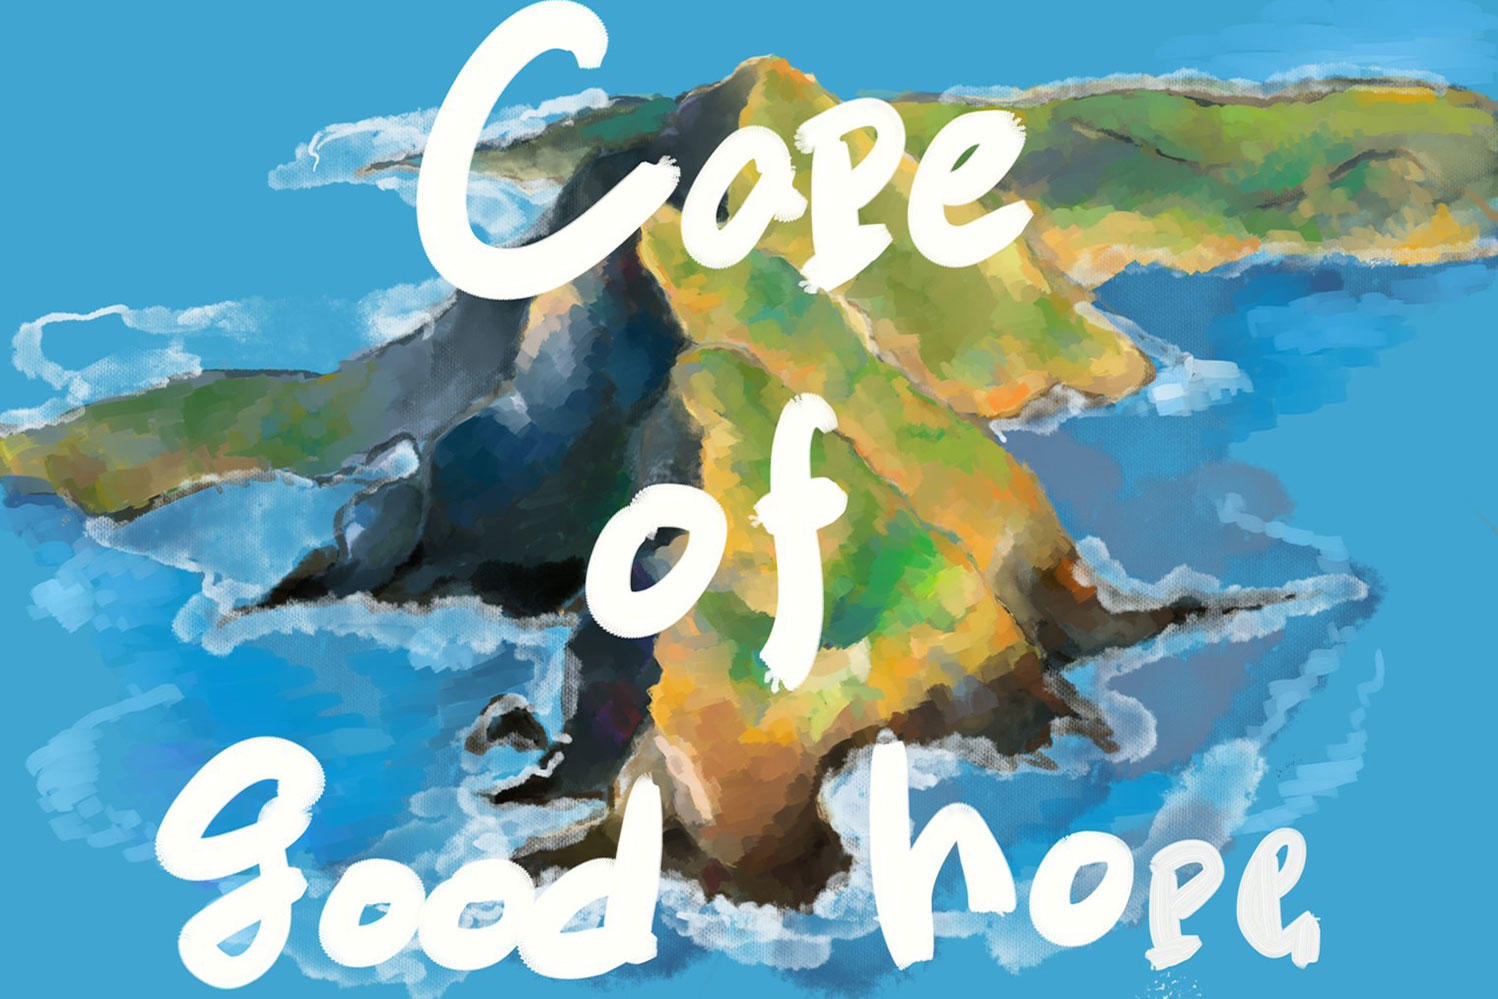 正体不明の謎の有機体Cape of good hope、楽曲「(：-D)FESTIVAL」リリース！